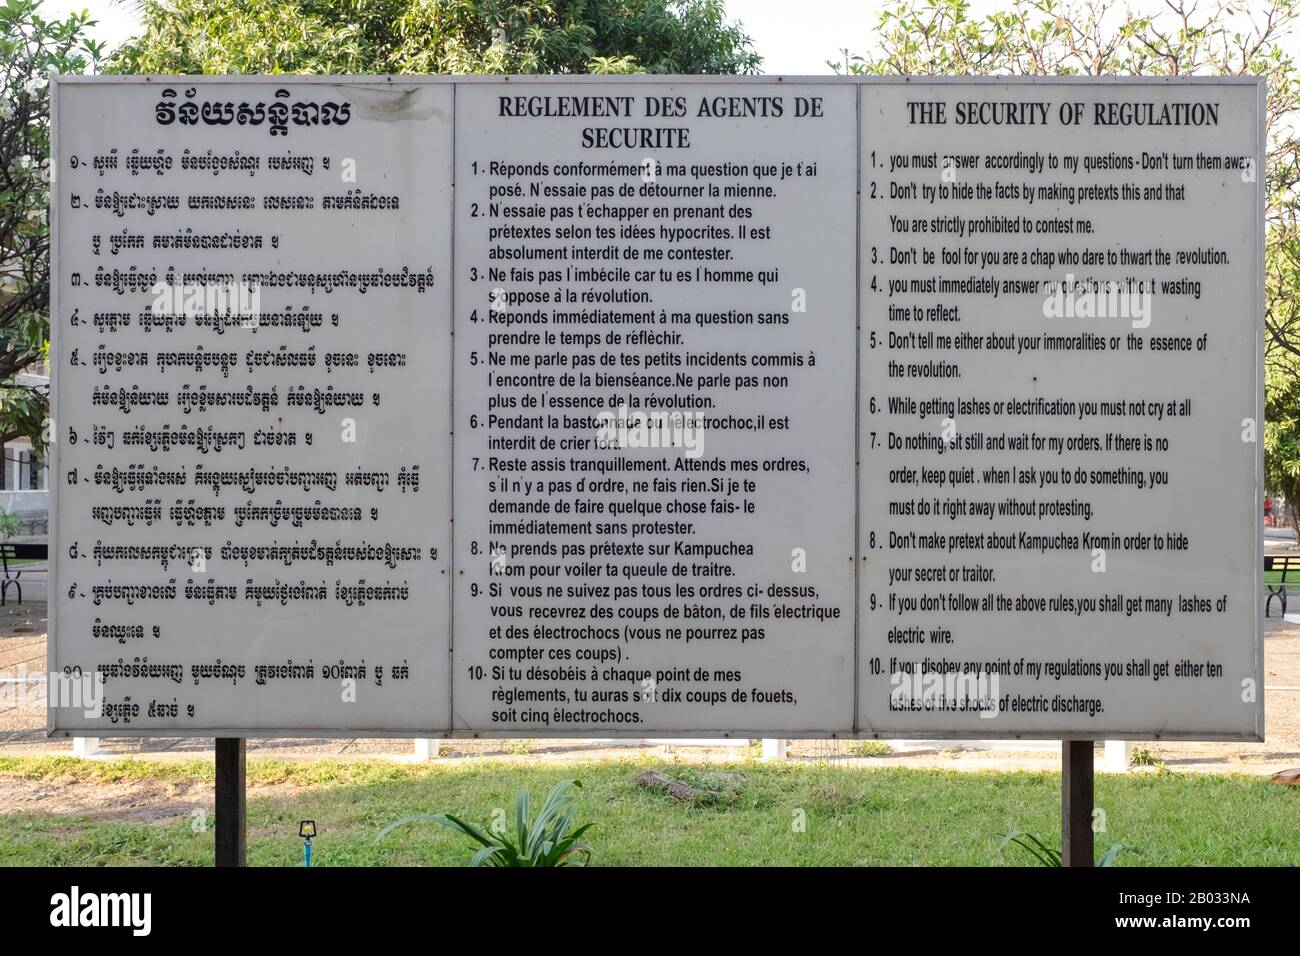 Das Genozid-Museum Tuol Sleng ist ein Museum in Phnom Penh, der Hauptstadt Kambodschas. Das Gelände ist ein ehemaliges Gymnasium, das von dem kommunistischen Regime der Khmer Rouge von seinem Machtaufstieg 1975 bis zu seinem Sturz 1979 als berüchtigtes Sicherheitsgefängnis 21 (S-21) genutzt wurde. Tuol Sleng bedeutet 'Hügel der Giftigen Bäume' oder 'Strychnine Hill'. Die Khmer Rouge oder die Kommunistische Partei Kampucheas regierten von 1975 bis 1979 Kambodscha, angeführt von Pol Pot, Nuon Chea, Ieng Sary, Son Sen und Khieu Samphan. Man erinnert sich vor allem an seine Brutalität und Politik der Sozialtechnik, die Millionen von Toten zur Folge hatte. Sein Stockfoto